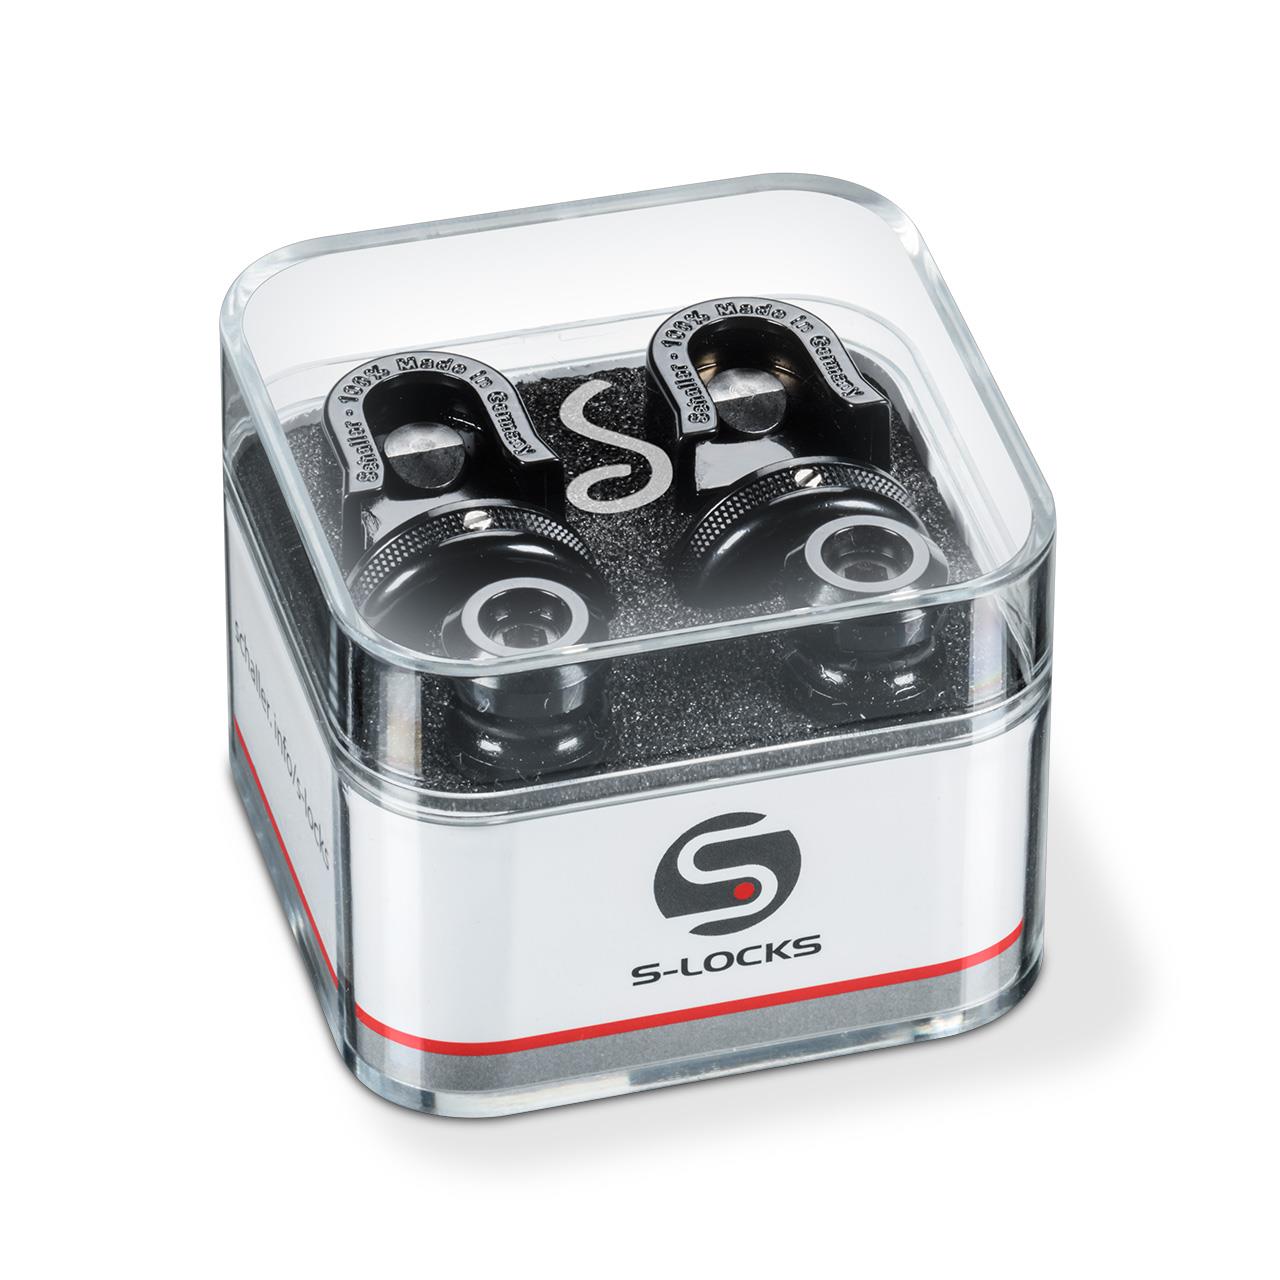 All New- BLACK Schaller Style locking Strap Button System-K1